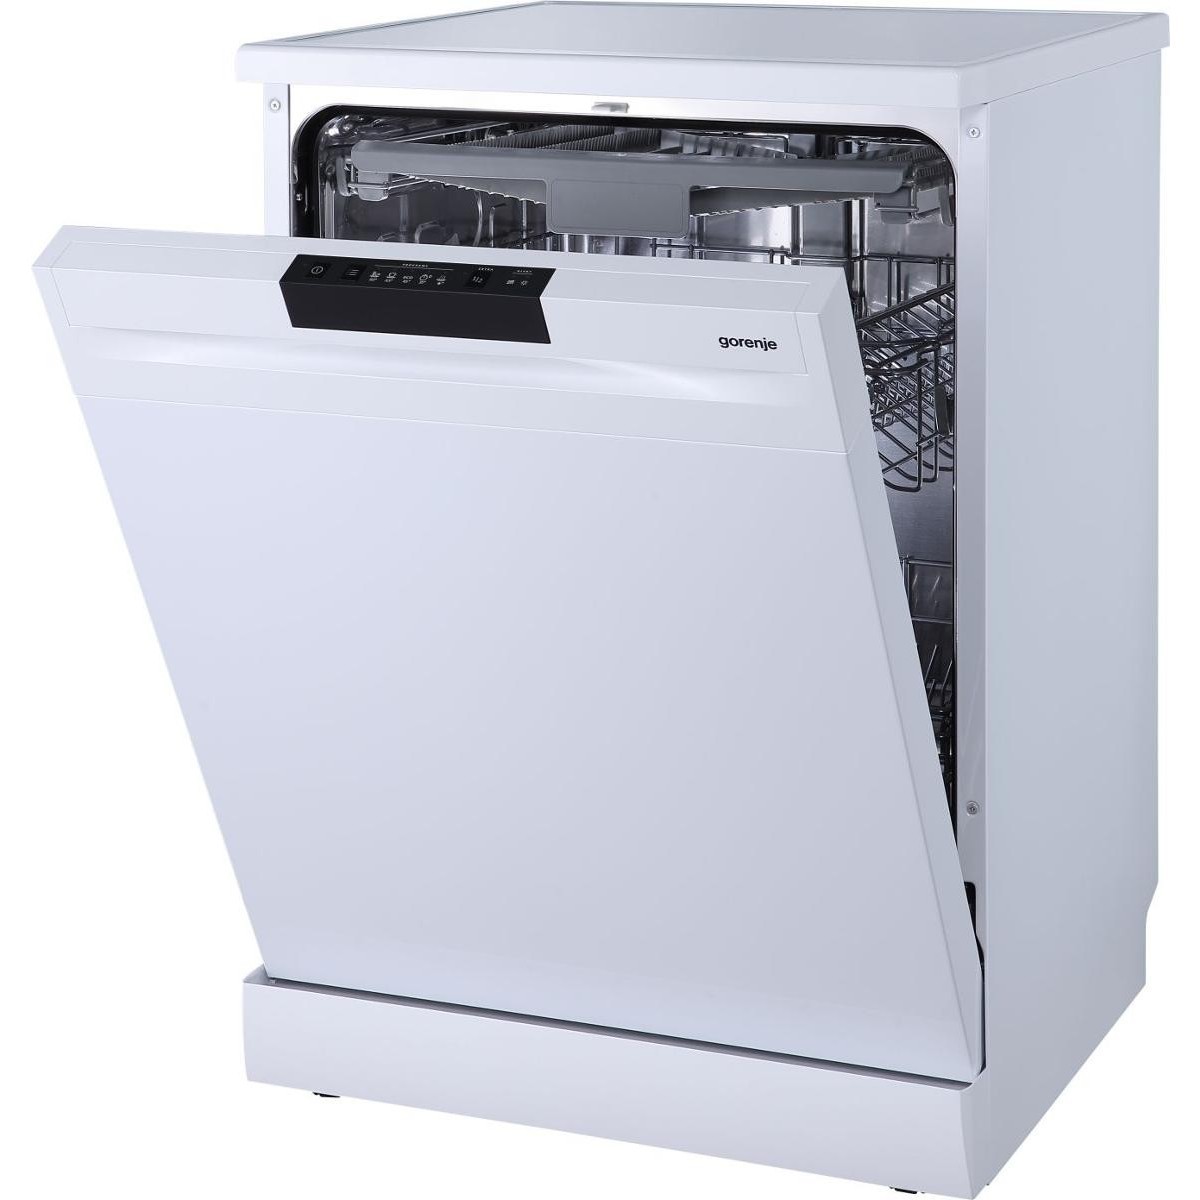 Встроенная посудомоечная машина 60 см горенье. Посудомоечная машина Gorenje gs531e10w. Посудомоечная машина Gorenje gs53110w. Посудомоечная машина Gorenje gs53010w. Посудомоечная машина Gorenje gs541d10w.